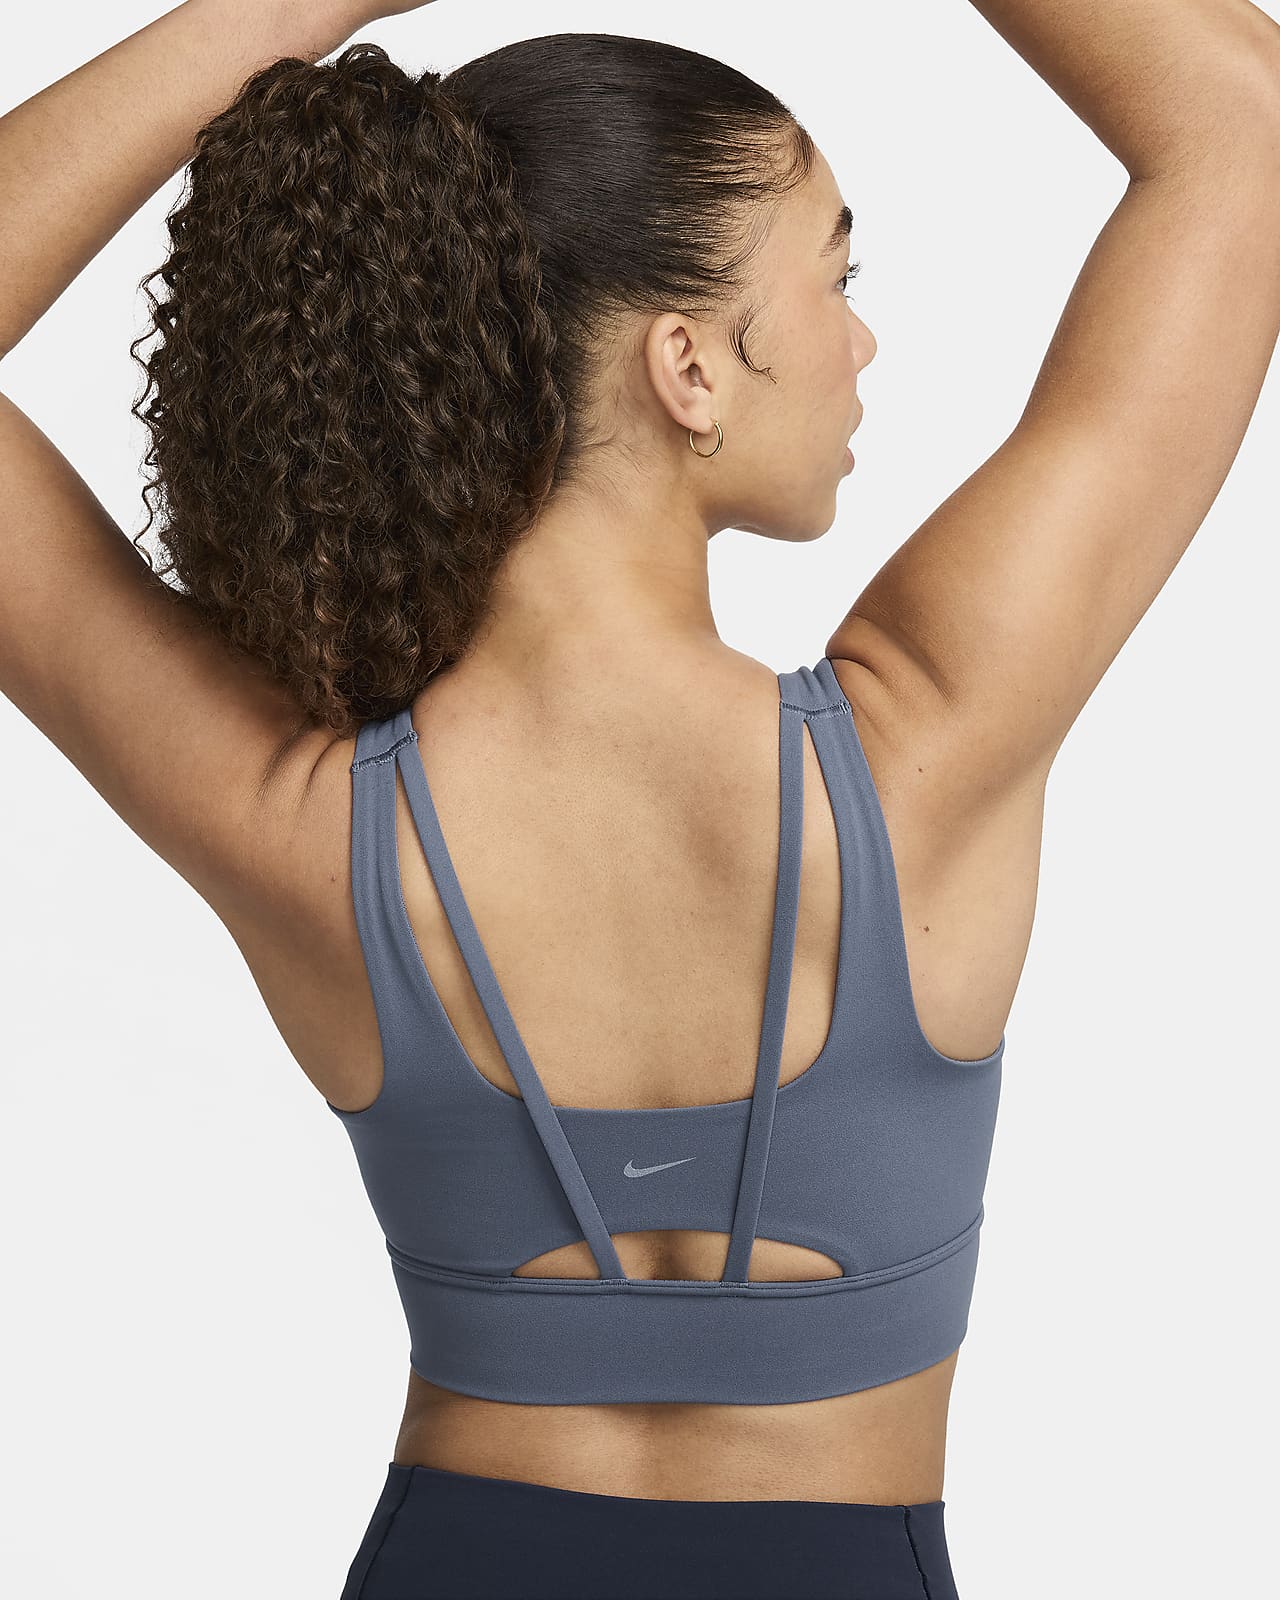 Prodloužená dámská sportovní podprsenka Nike Zenvy s vycpávkami a střední oporou